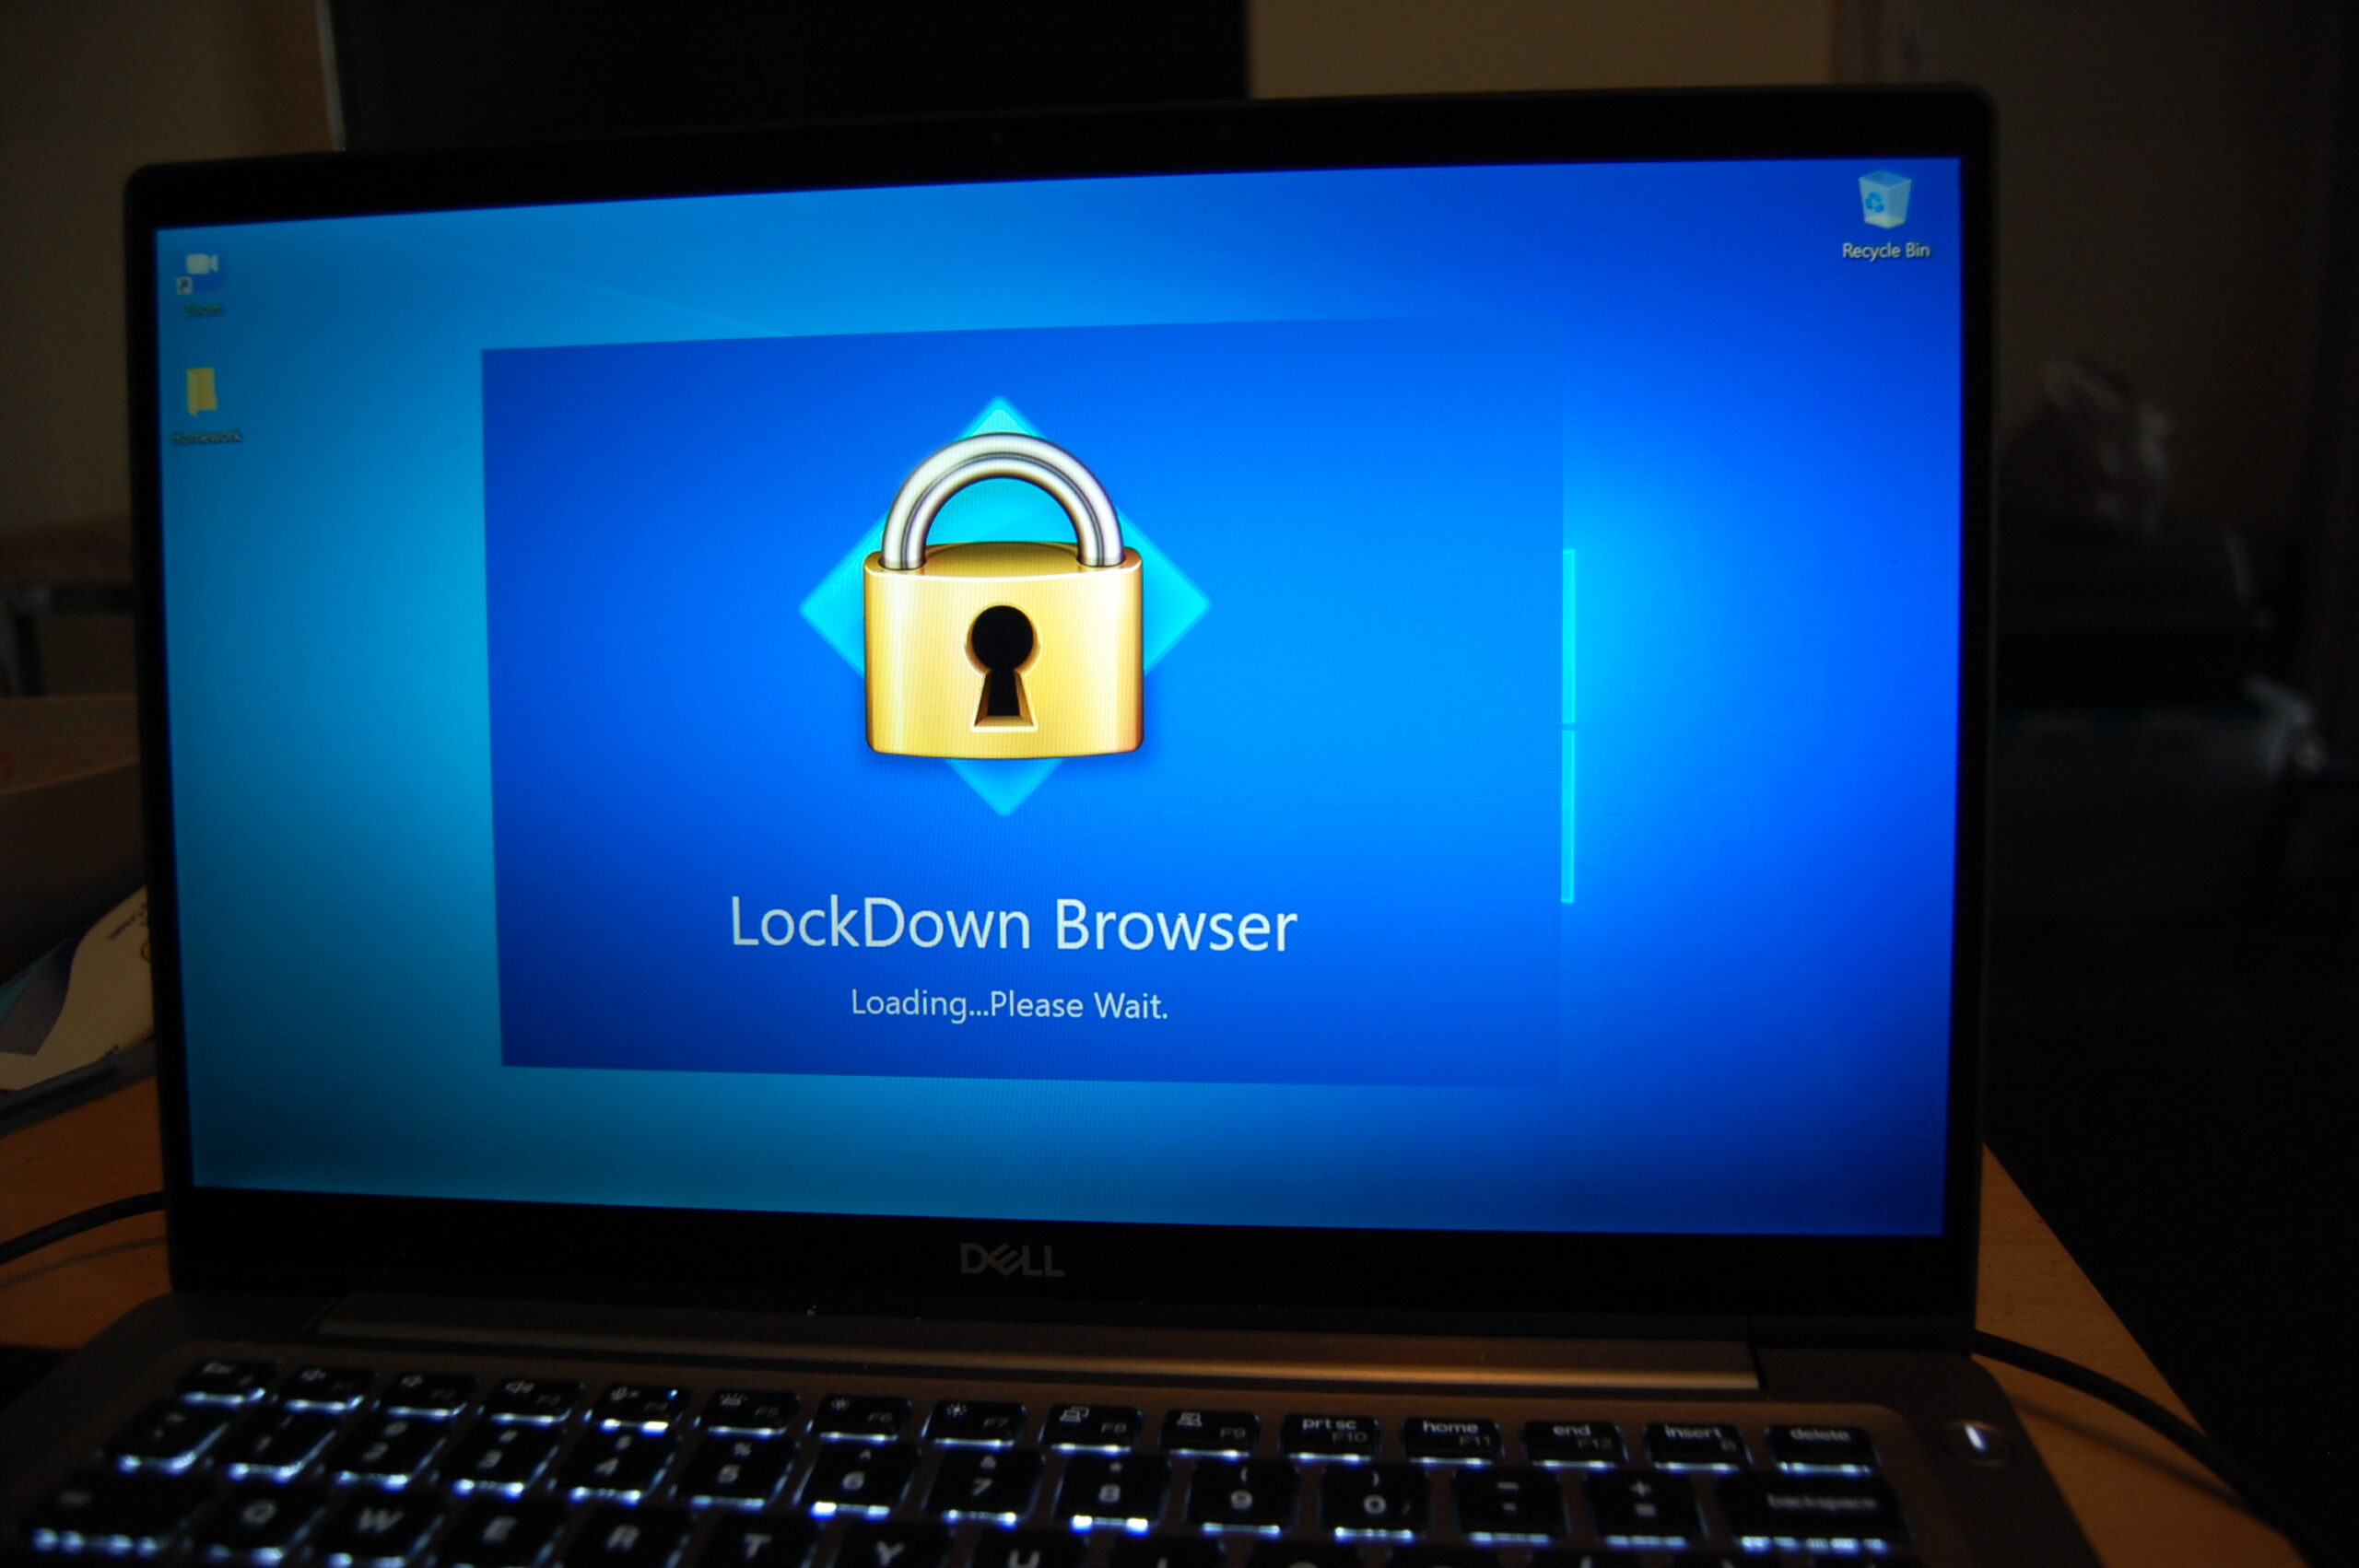 respondus lockdown browser fiu download